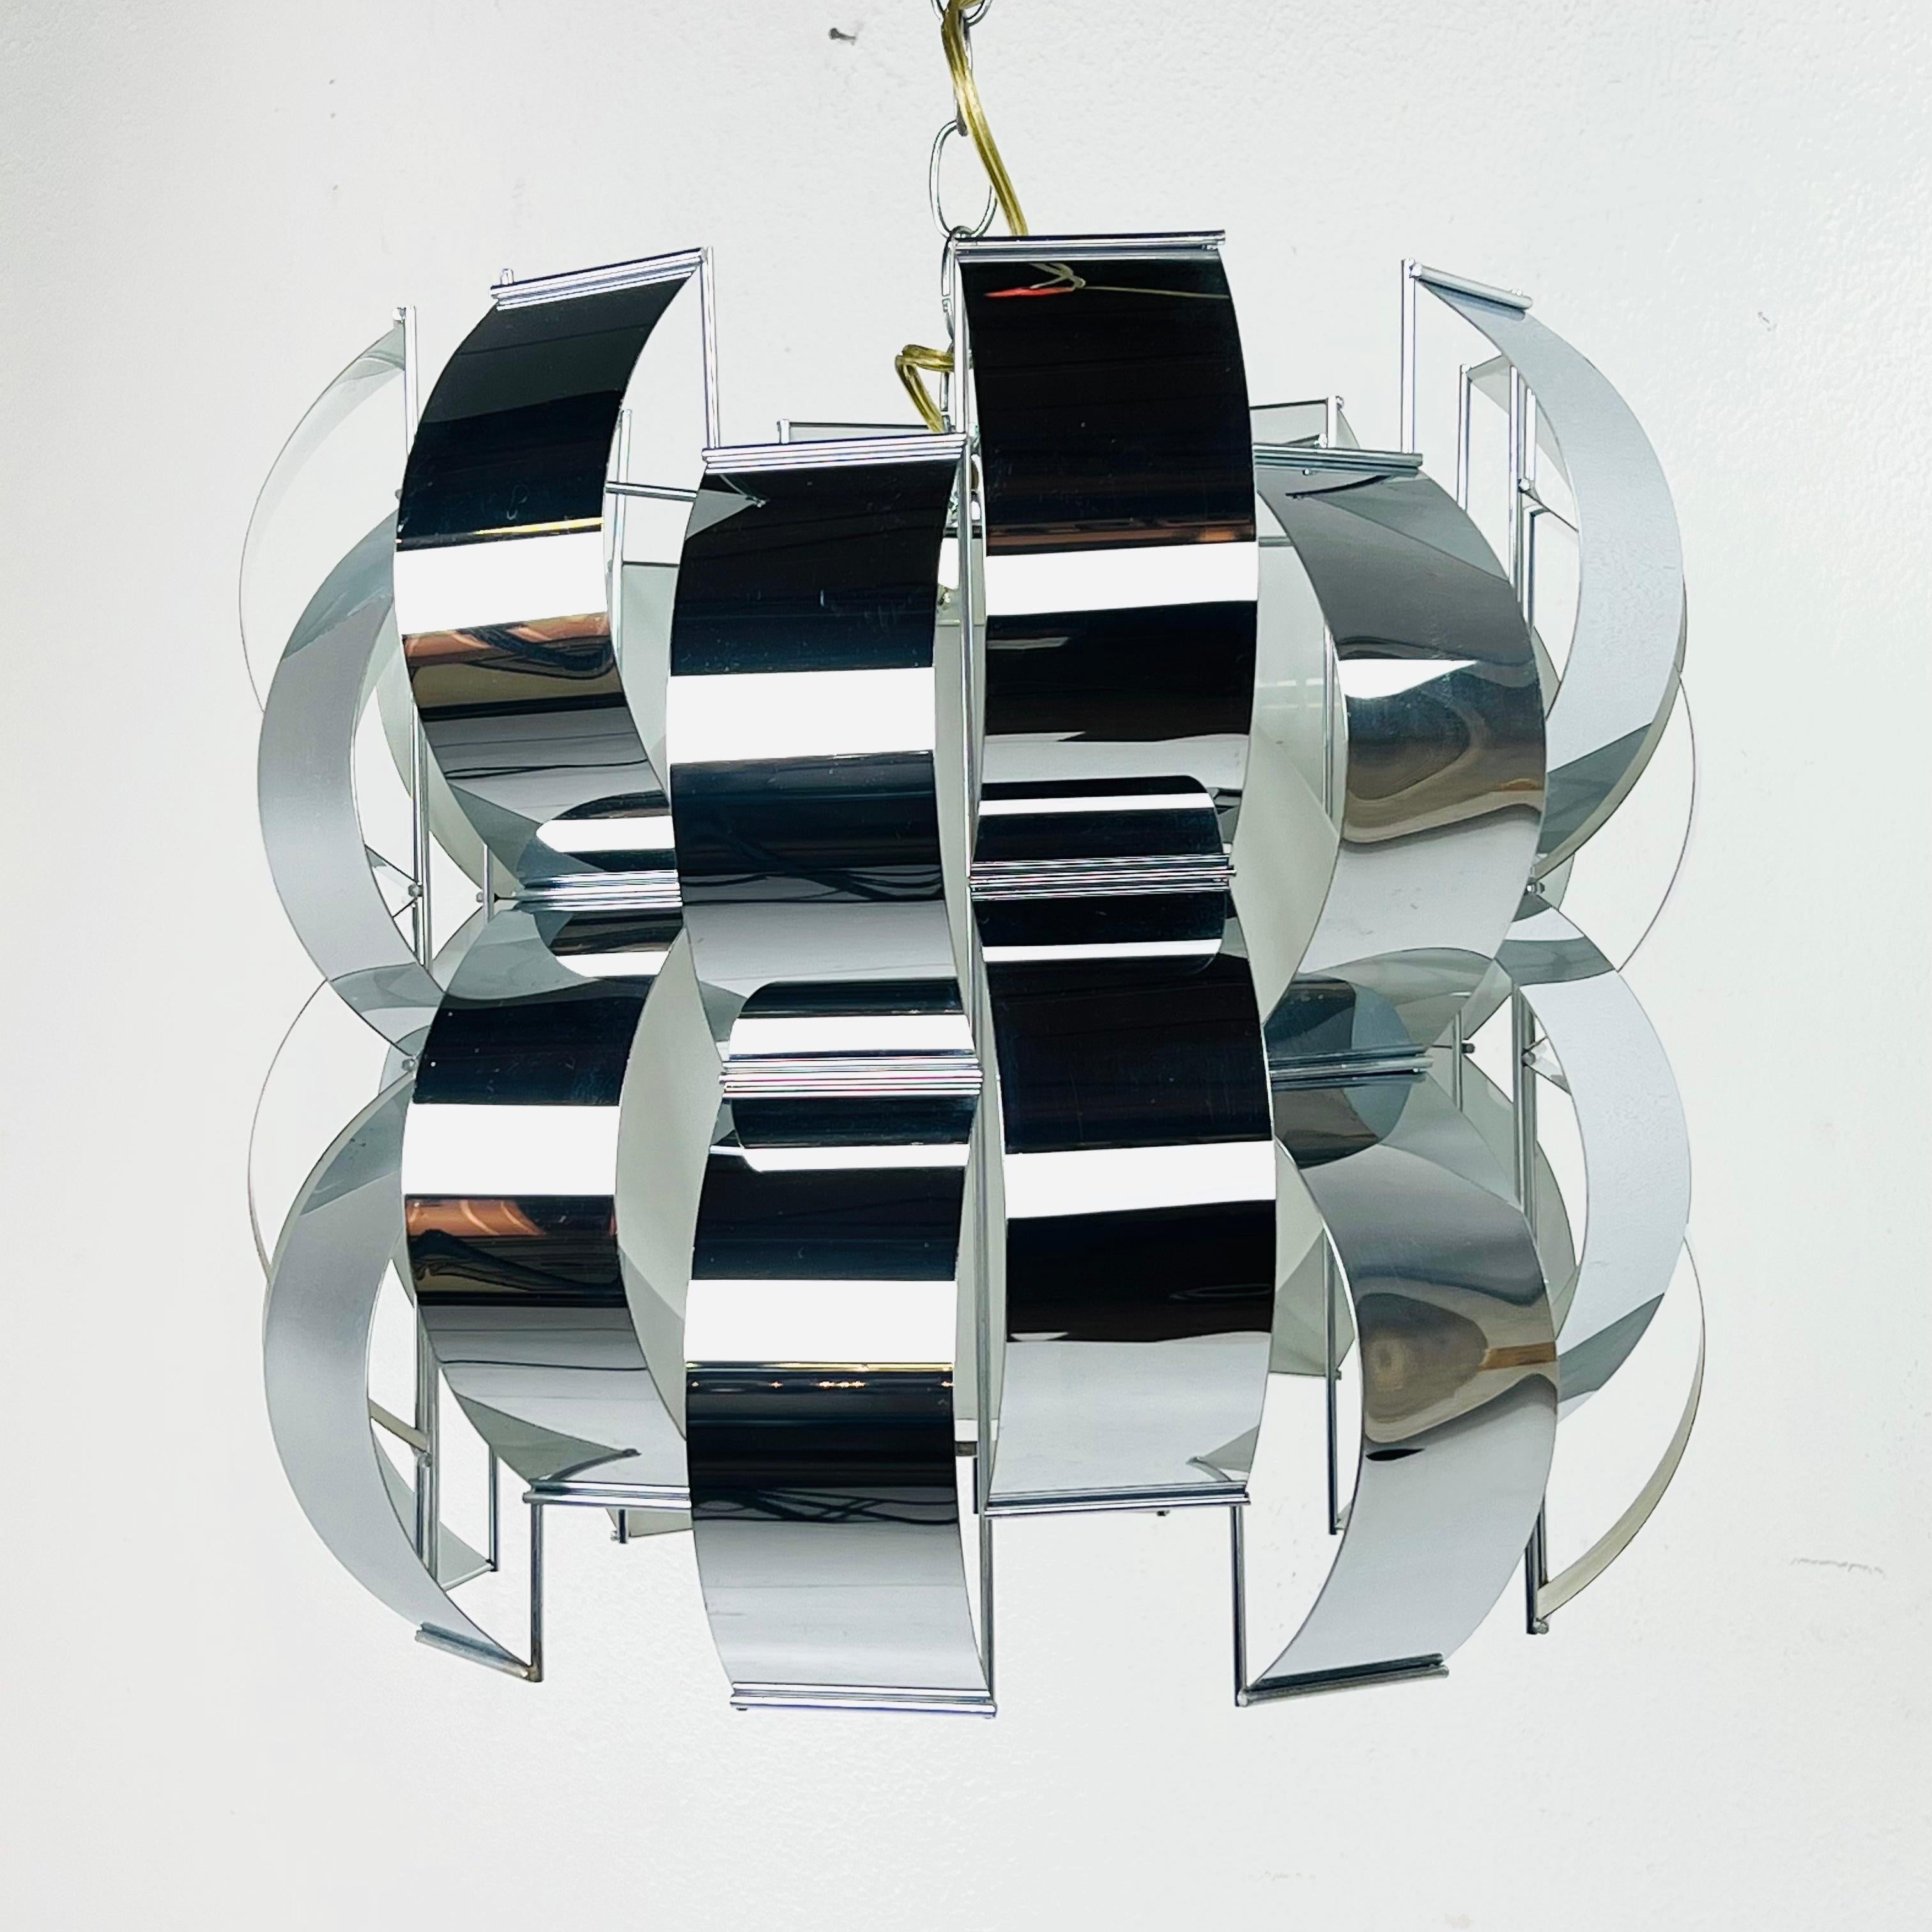 Schicker Metallband-Kronleuchter, entworfen nach Max Sauze für Lightolier, ca. 1960er Jahre. Gebogene Chromelemente bilden die 